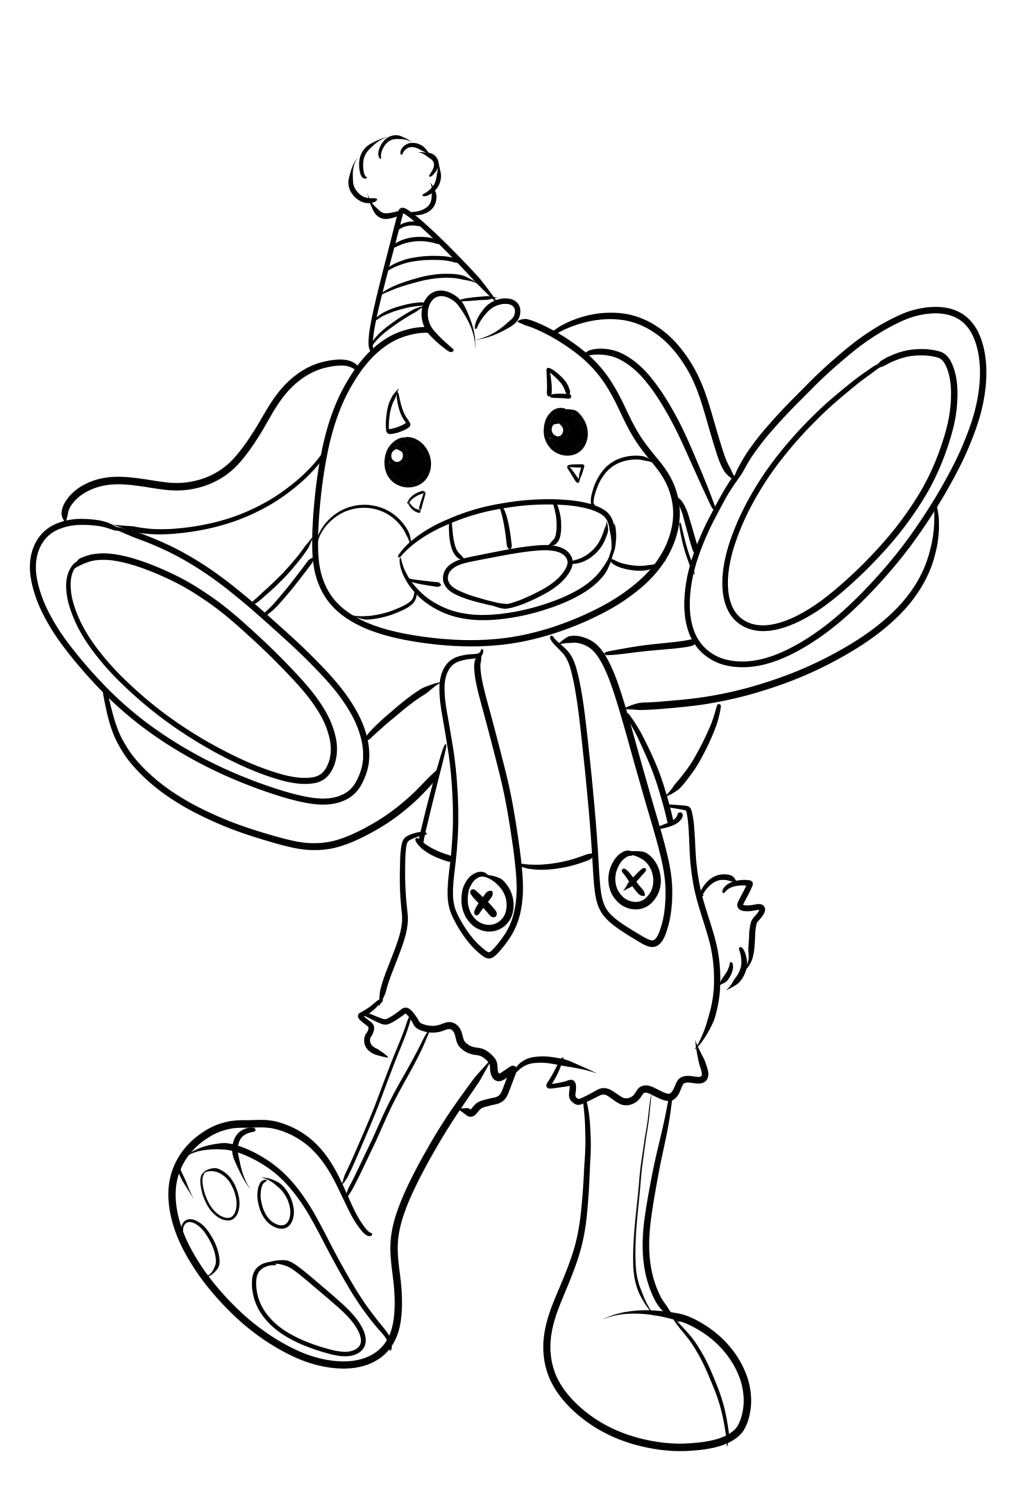 Dibujo 01 de Bunzo Bunny para imprimir y colorear